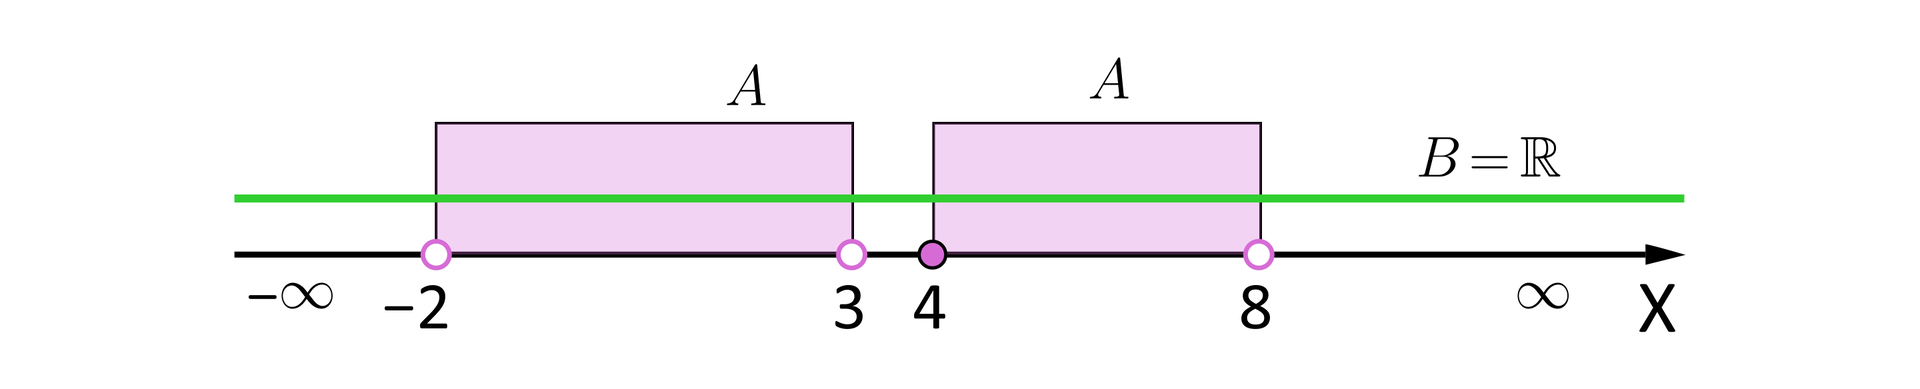 Ilustracja przedstawia oś iks ze zbiorem liczb rzeczywistym opisany jako be równe liczby rzeczywiste oraz dwa inne zbiory: zaznaczony pustymi kropkami od minus dwa do trzy opisany jako a oraz od cztery zaznaczony pełną kropką do osiem zaznaczony pustą kropką.